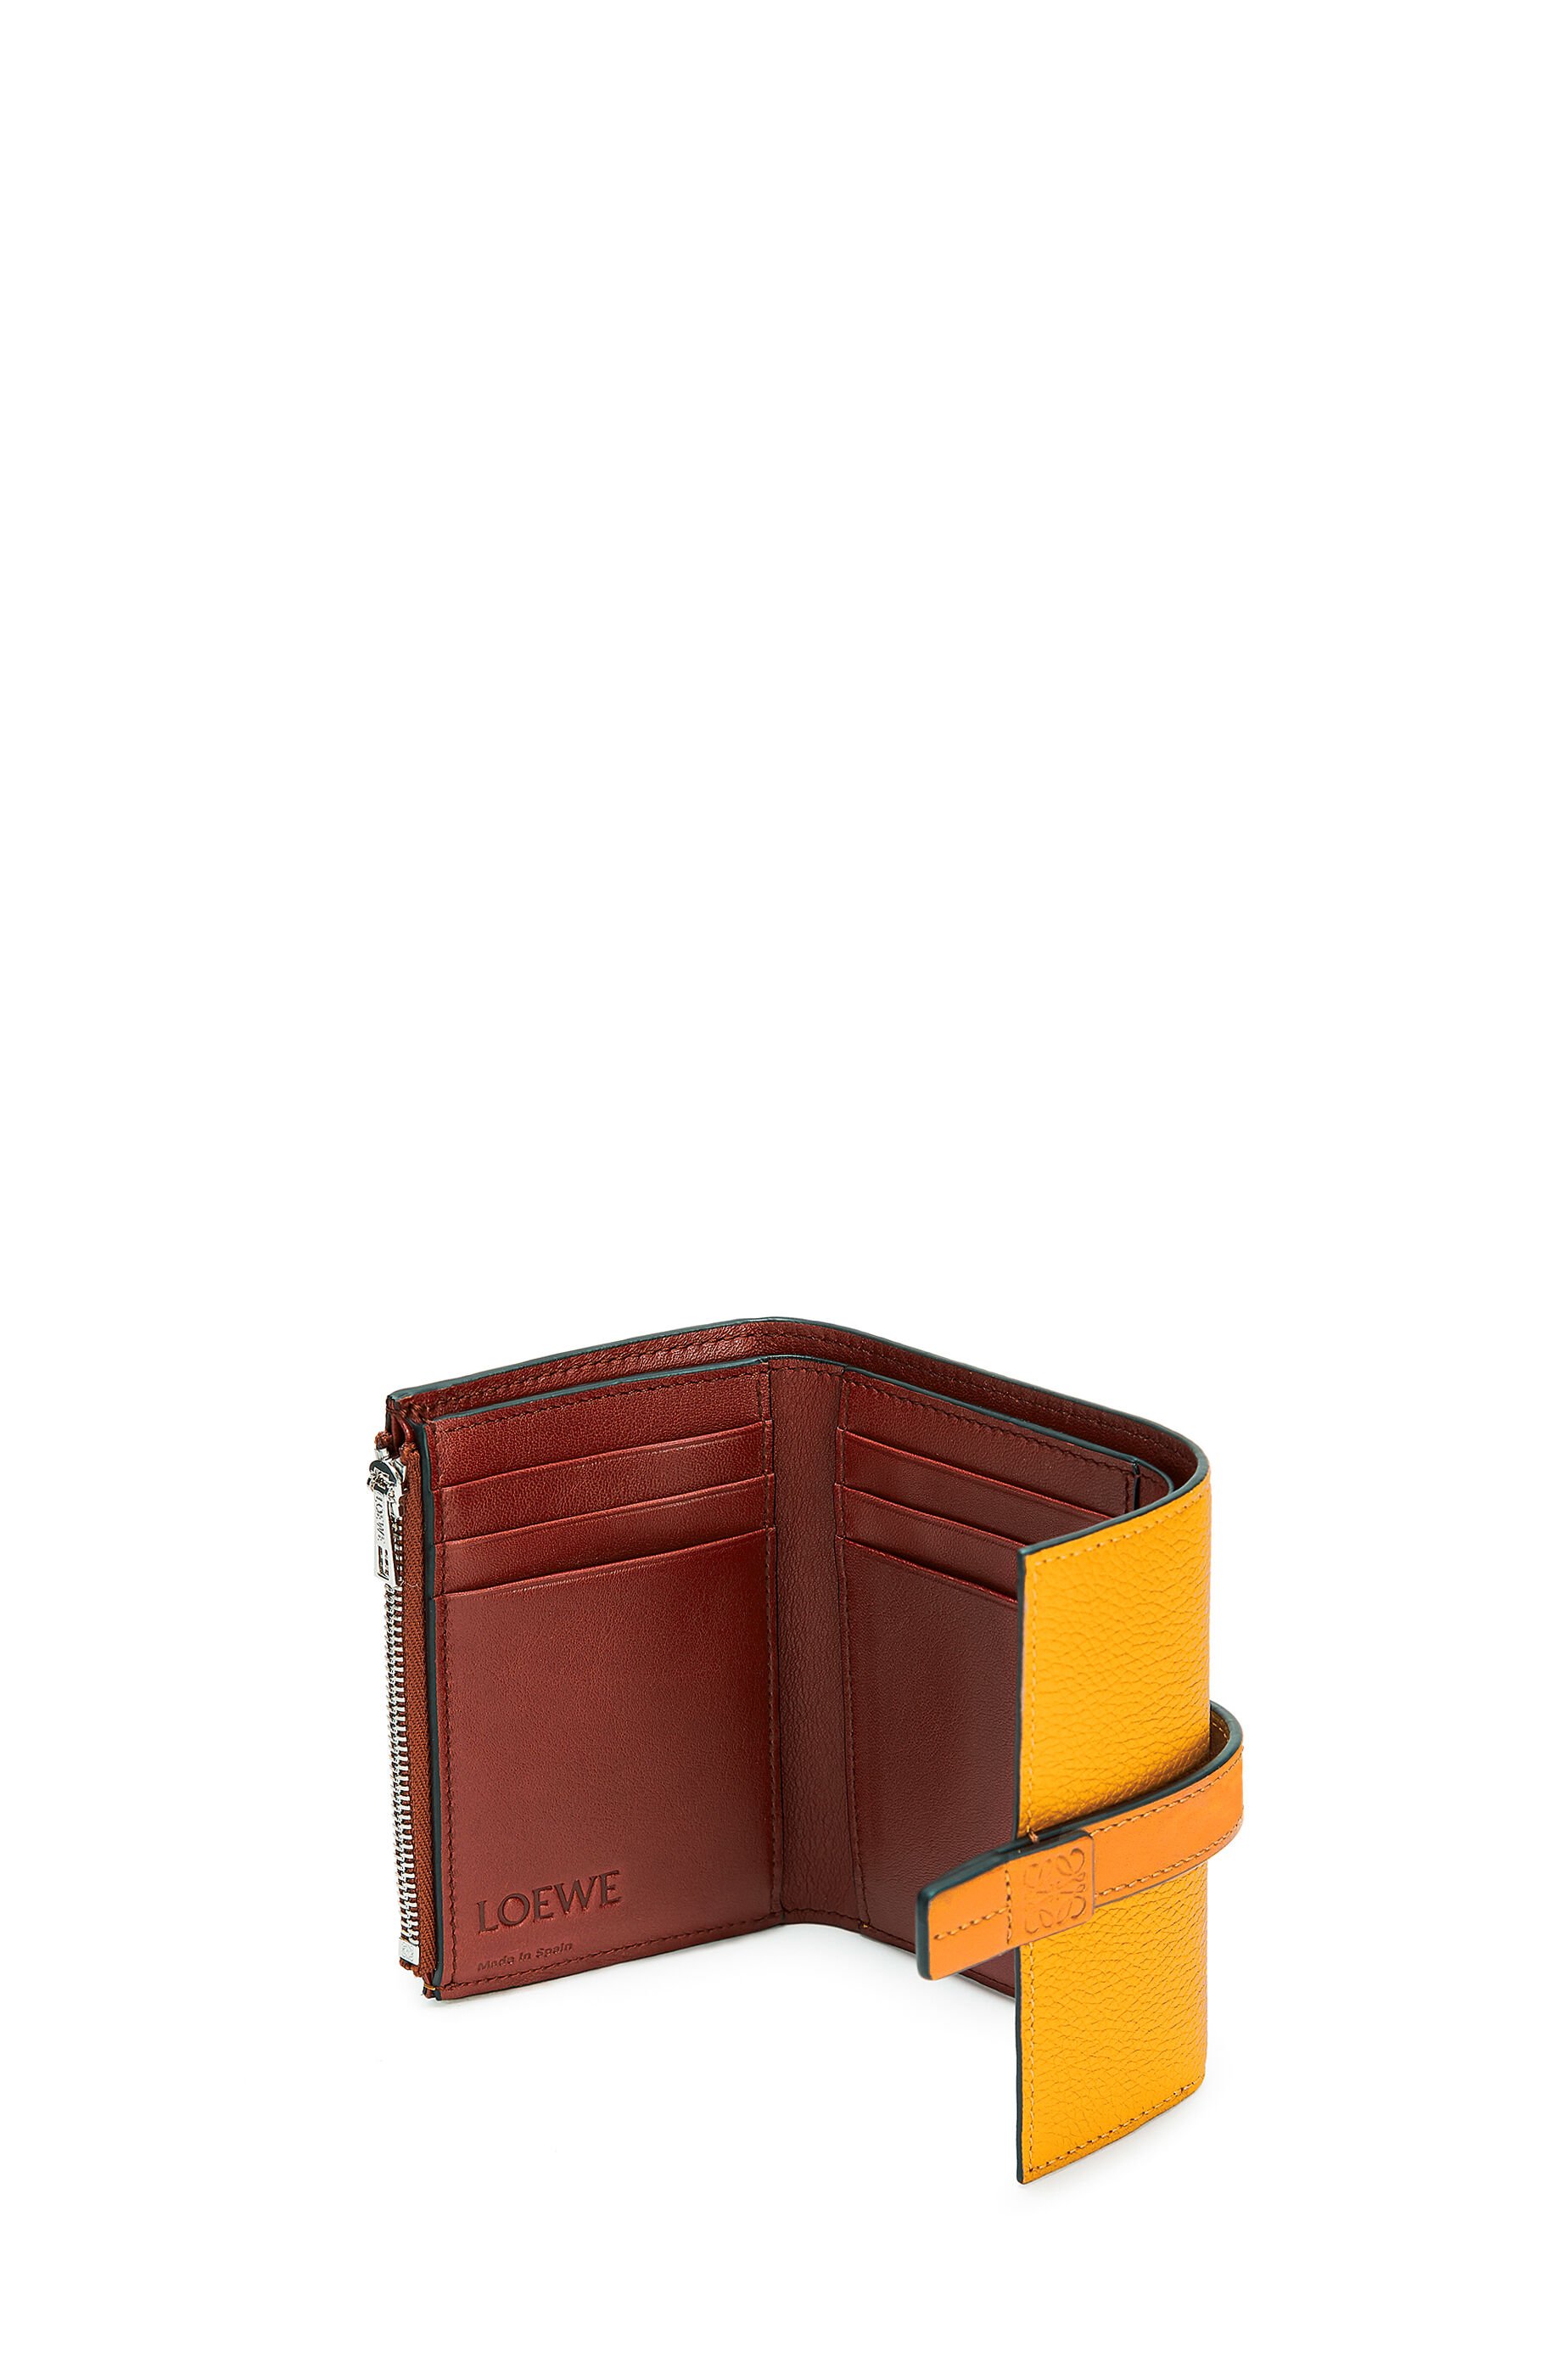 loewe compact wallet